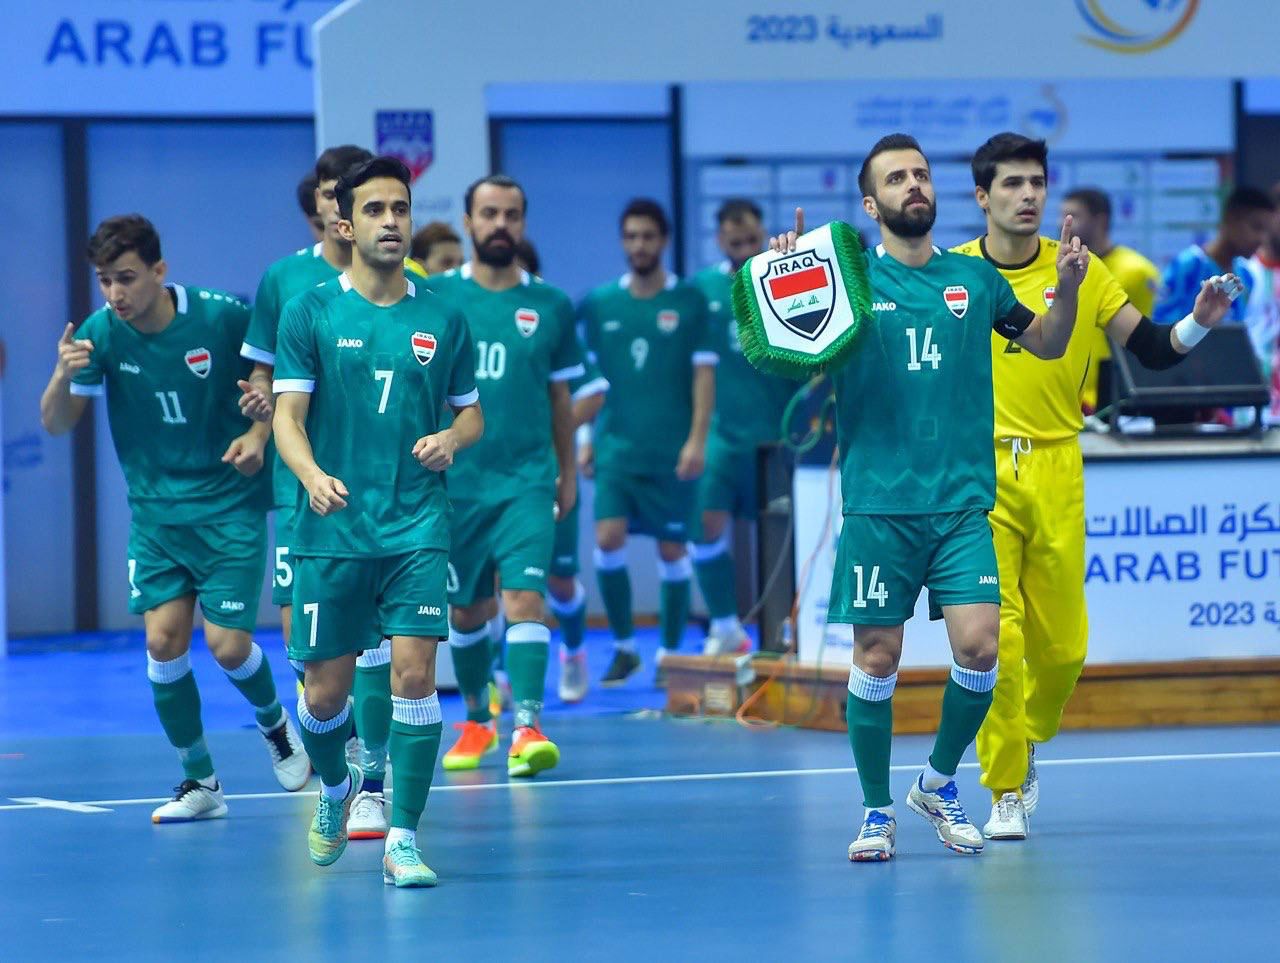 العراق يخفق بالتأهل الى دور نصف نهائي كأس العرب لكرة الصالات